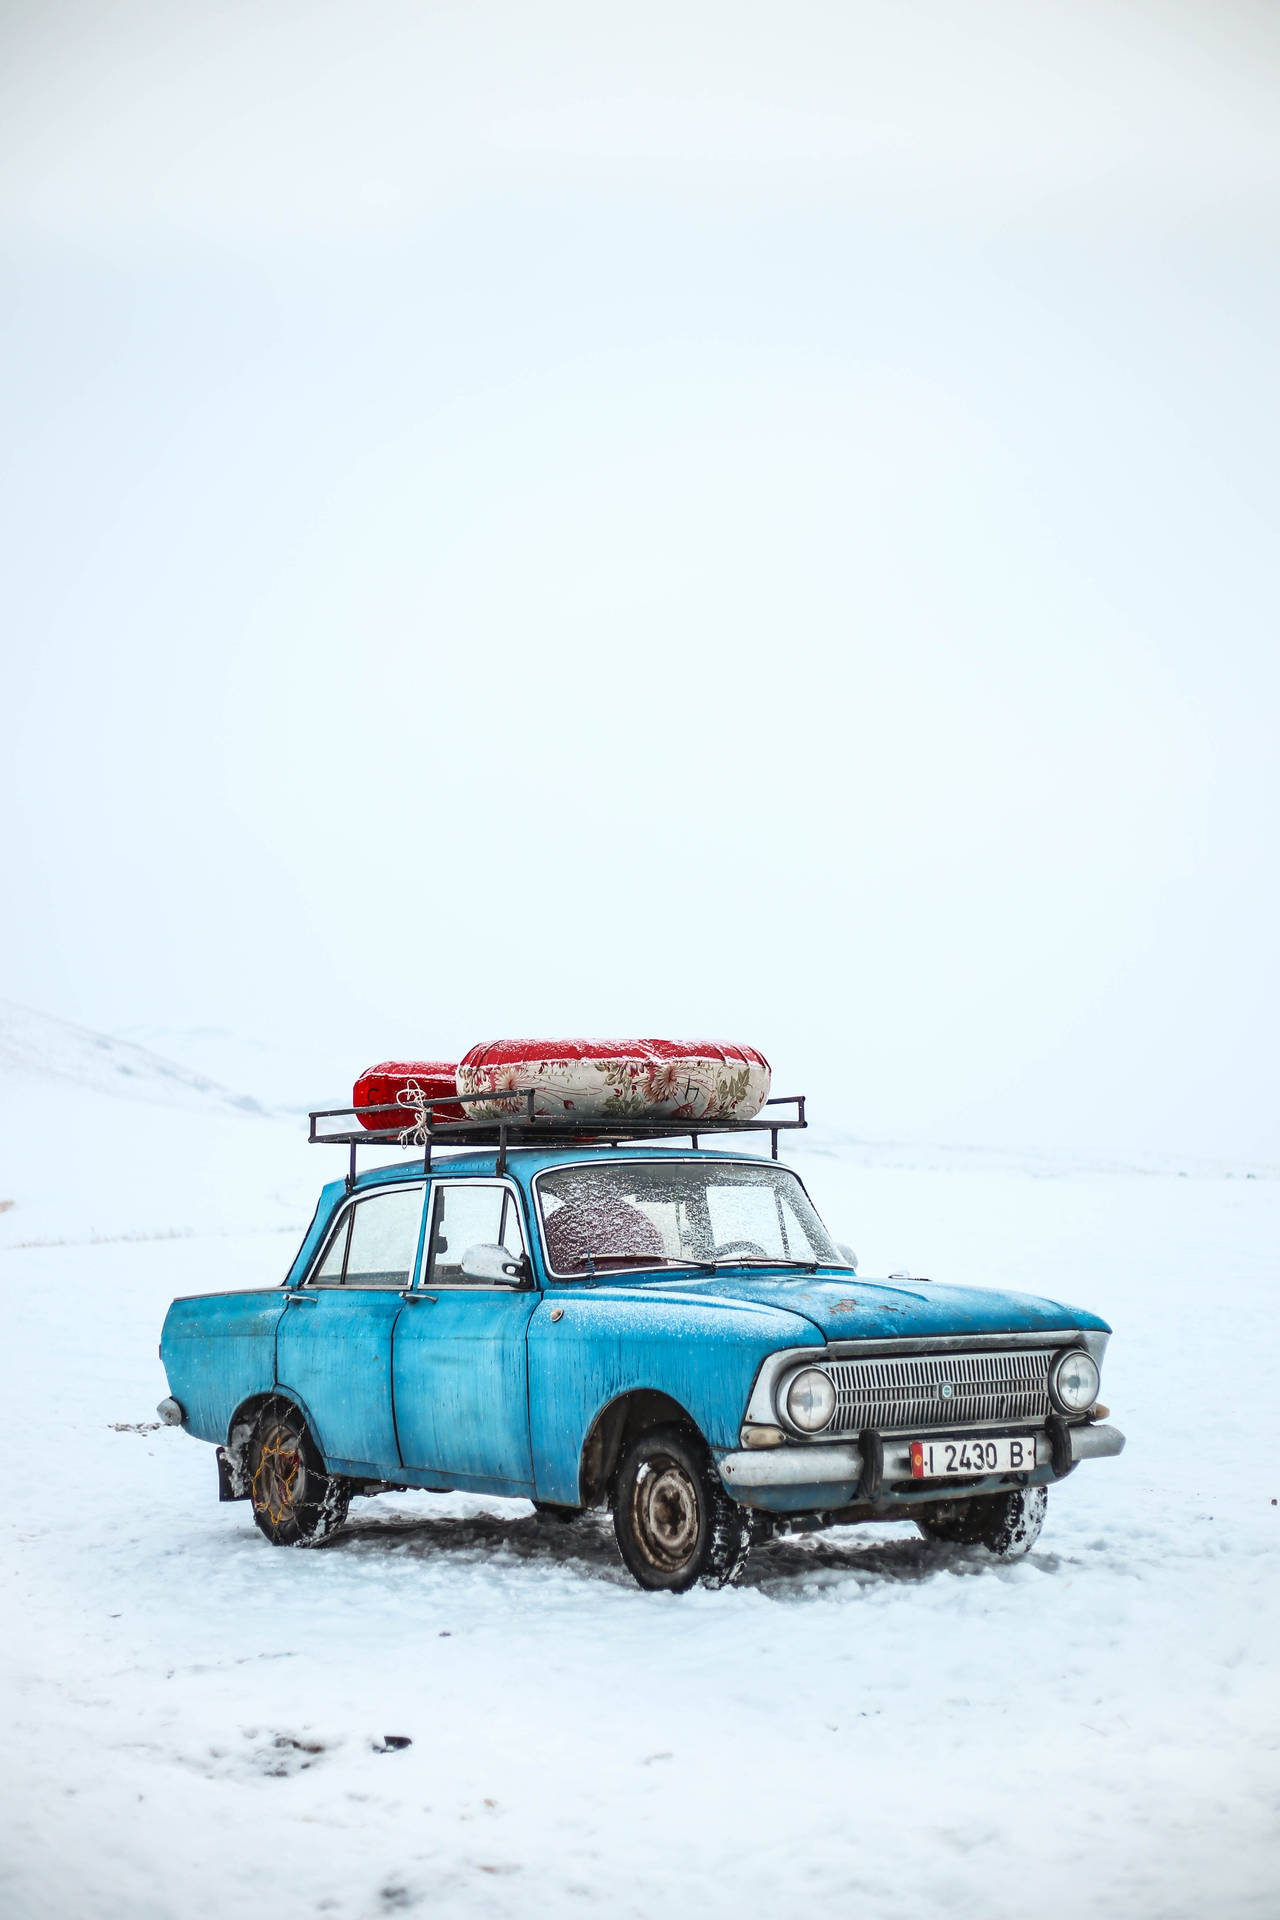 Kyrgyzstan Winter Blue Car